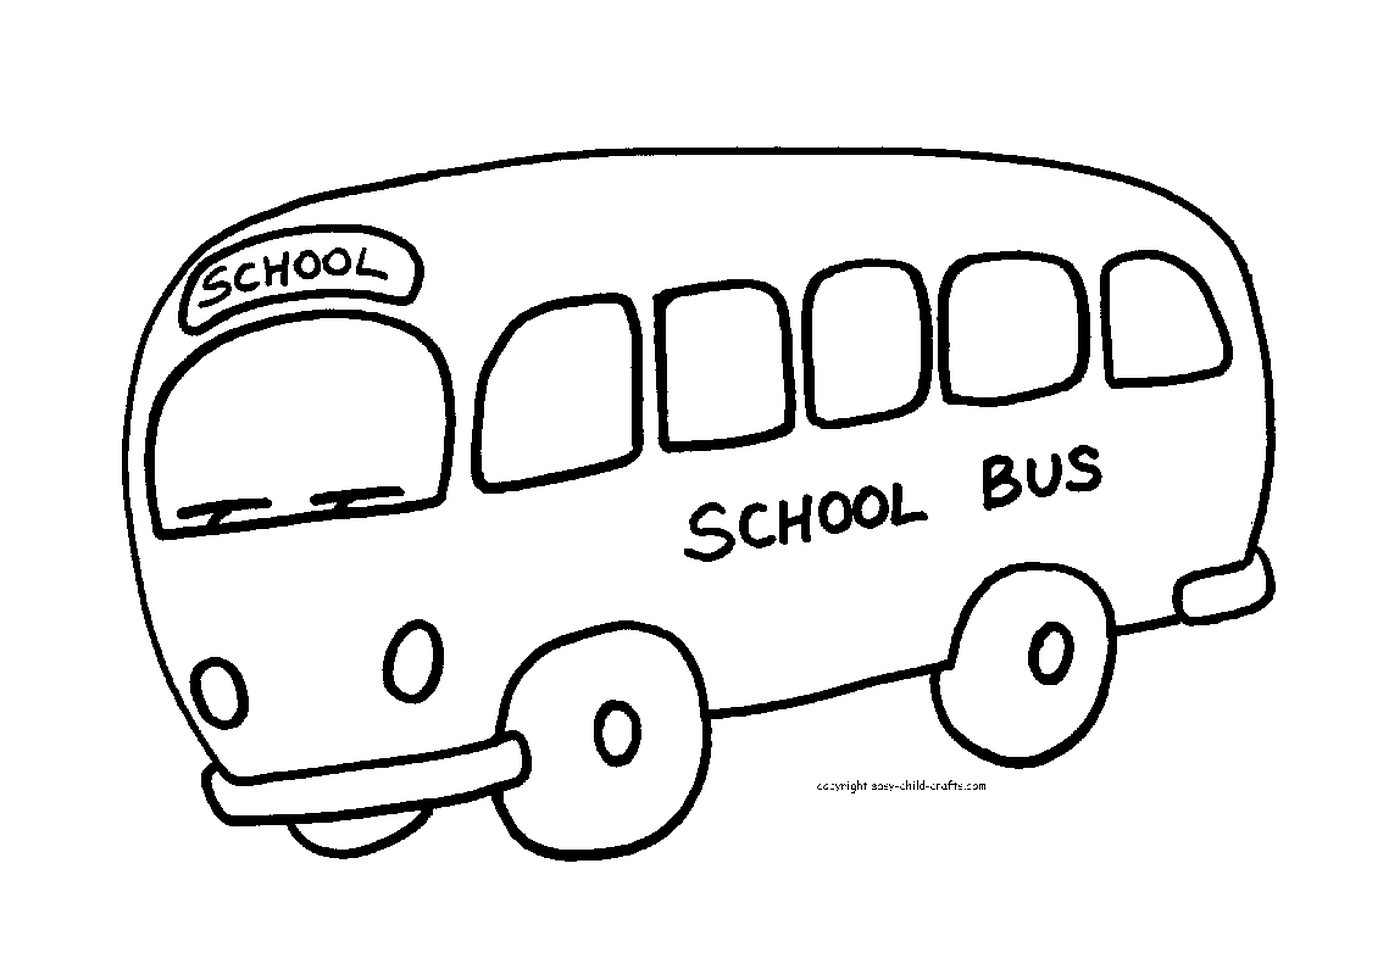  Uno scuolabus pronto ad accogliere gli studenti 